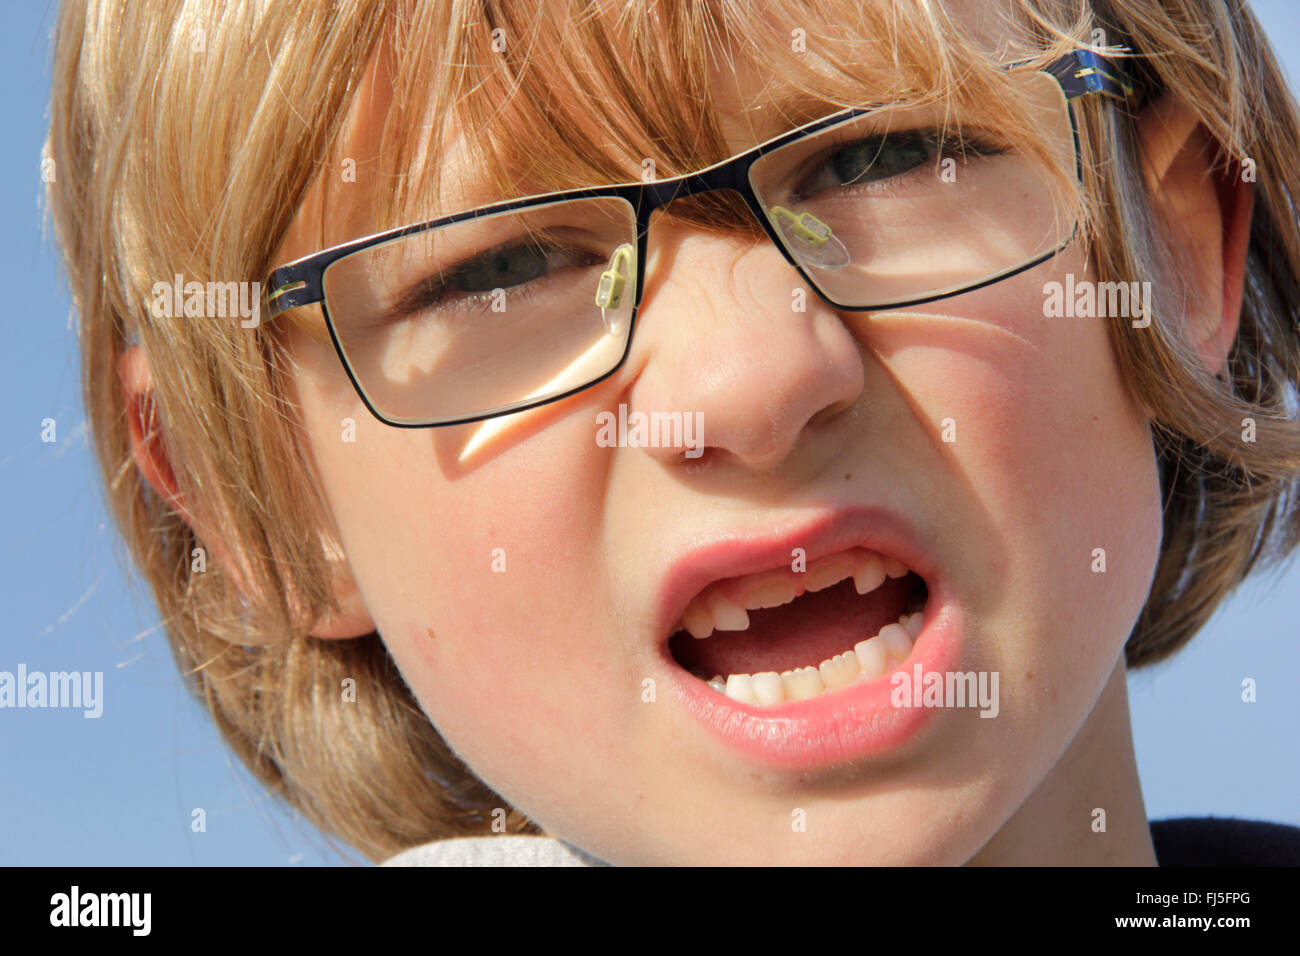 Petit garçon avec la deuxième incisives, dentition permanente, portrait d'un enfant Banque D'Images